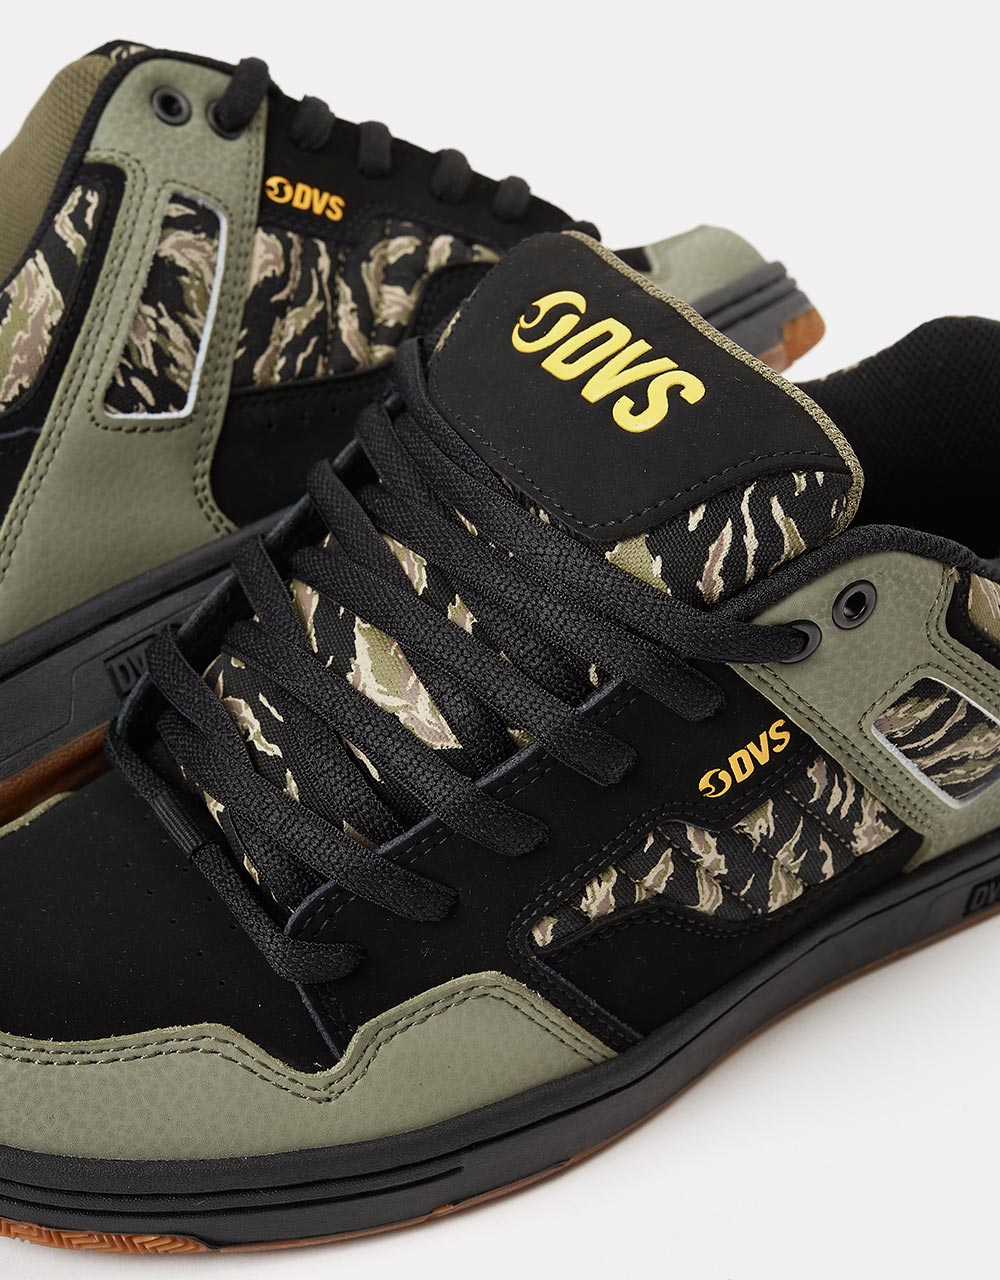 DVS Enduro 125 Skate Shoes - Black/Jungle Camo Nubuck